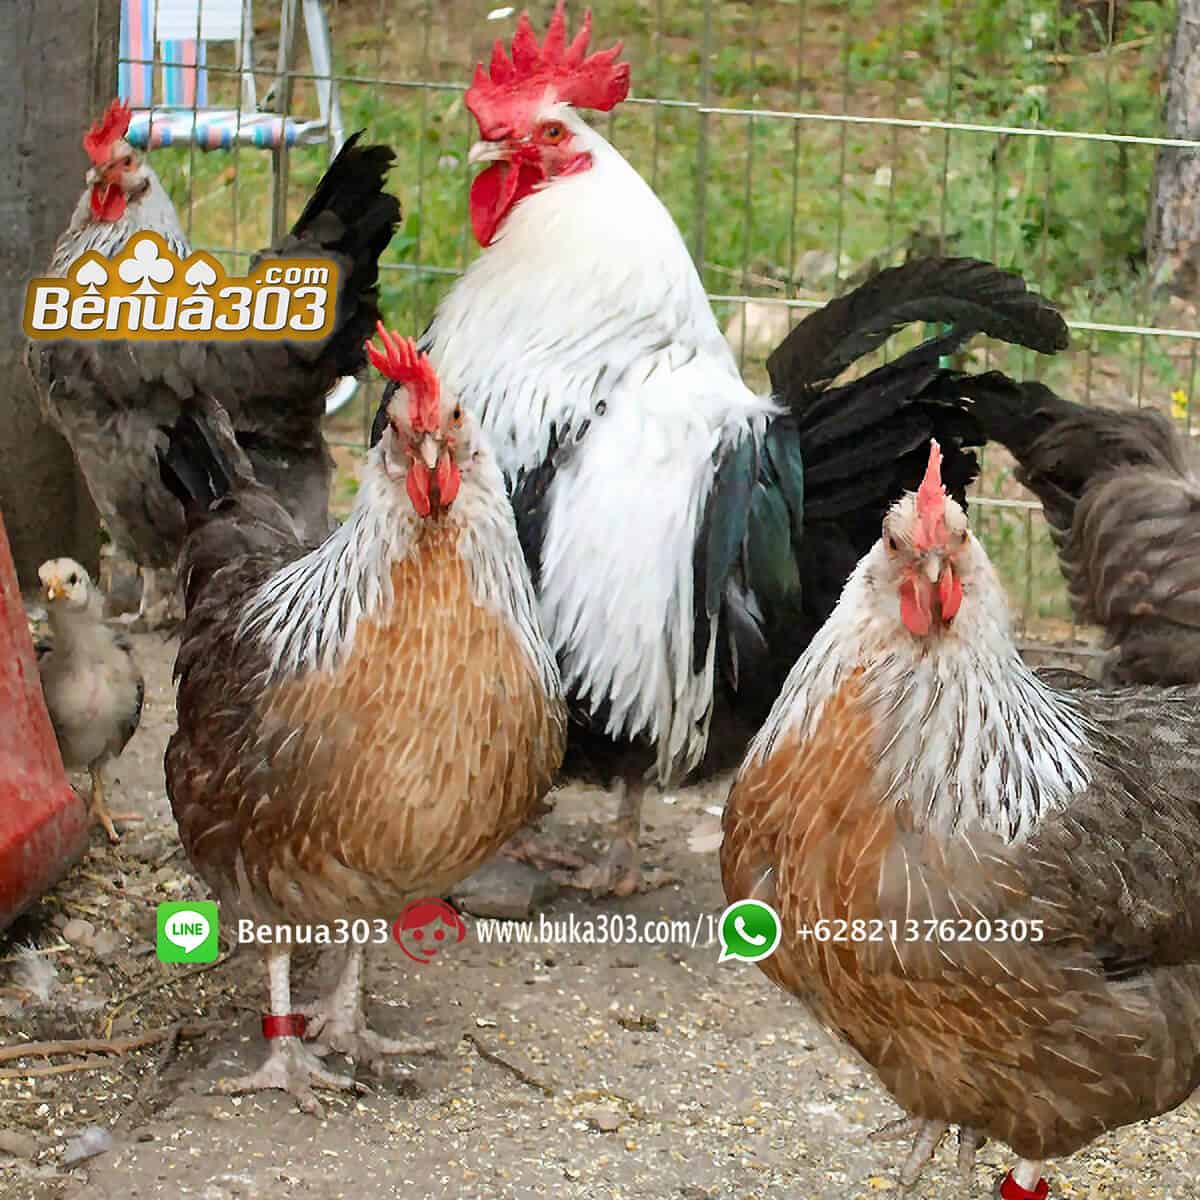 Agen Online Sabung Ayam S1288 (1)